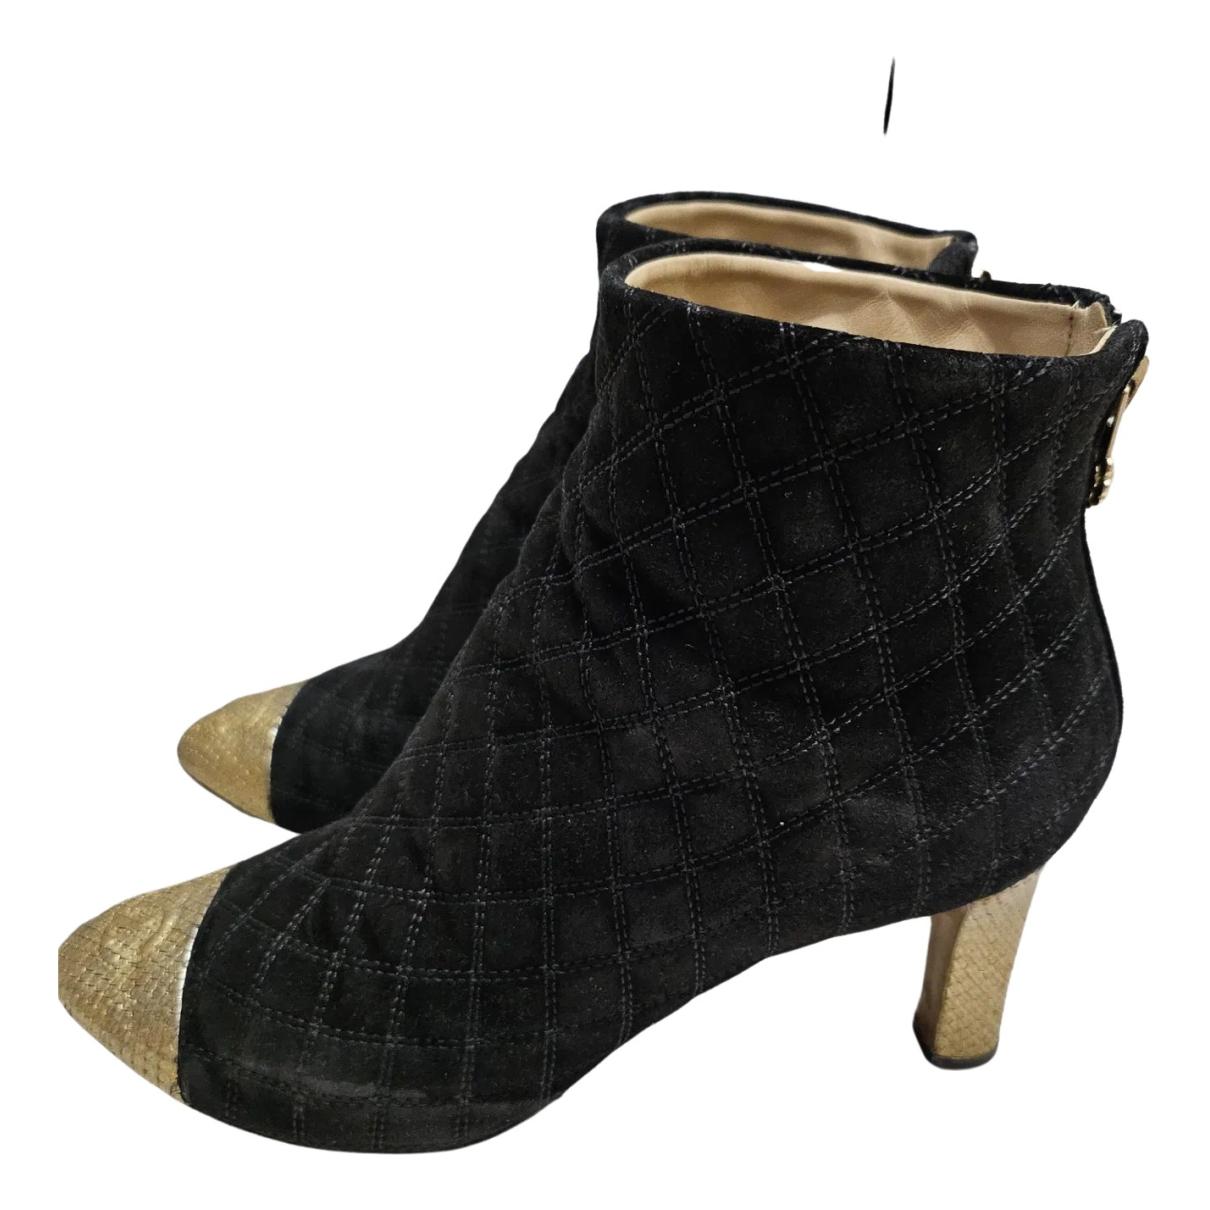 Louis Vuitton 👆 Monogram/Knit Silhouette Ankle Boots Black. SIZE